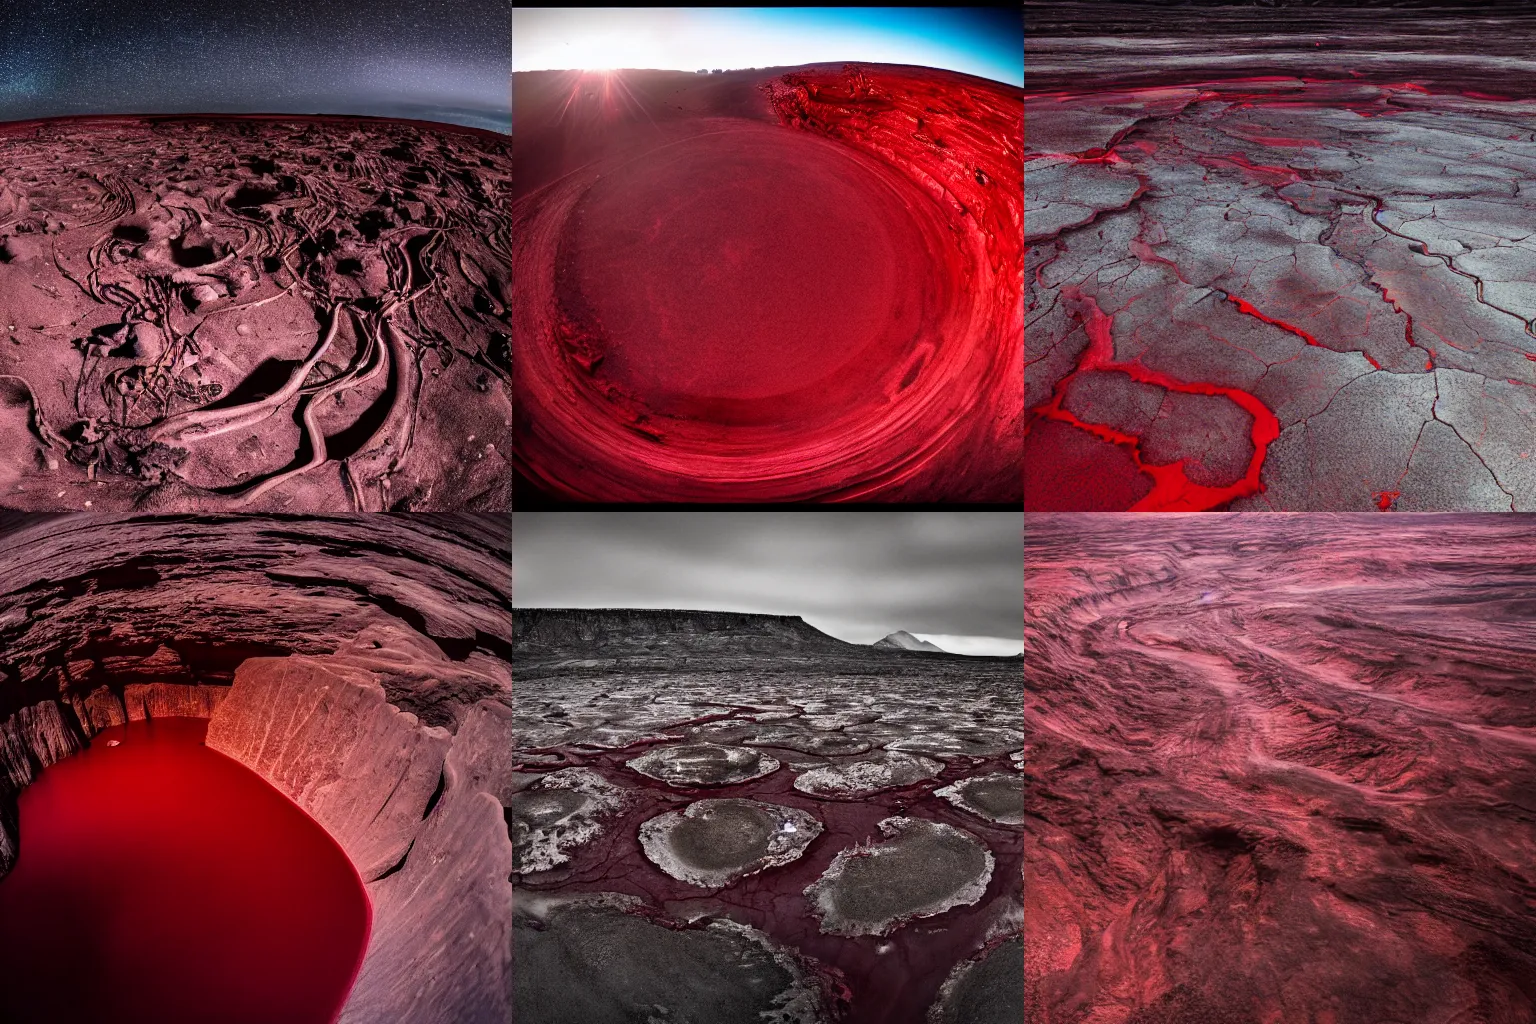 Prompt: alien planet, huge skeletons lie between dark red rivers, 14 mm lens